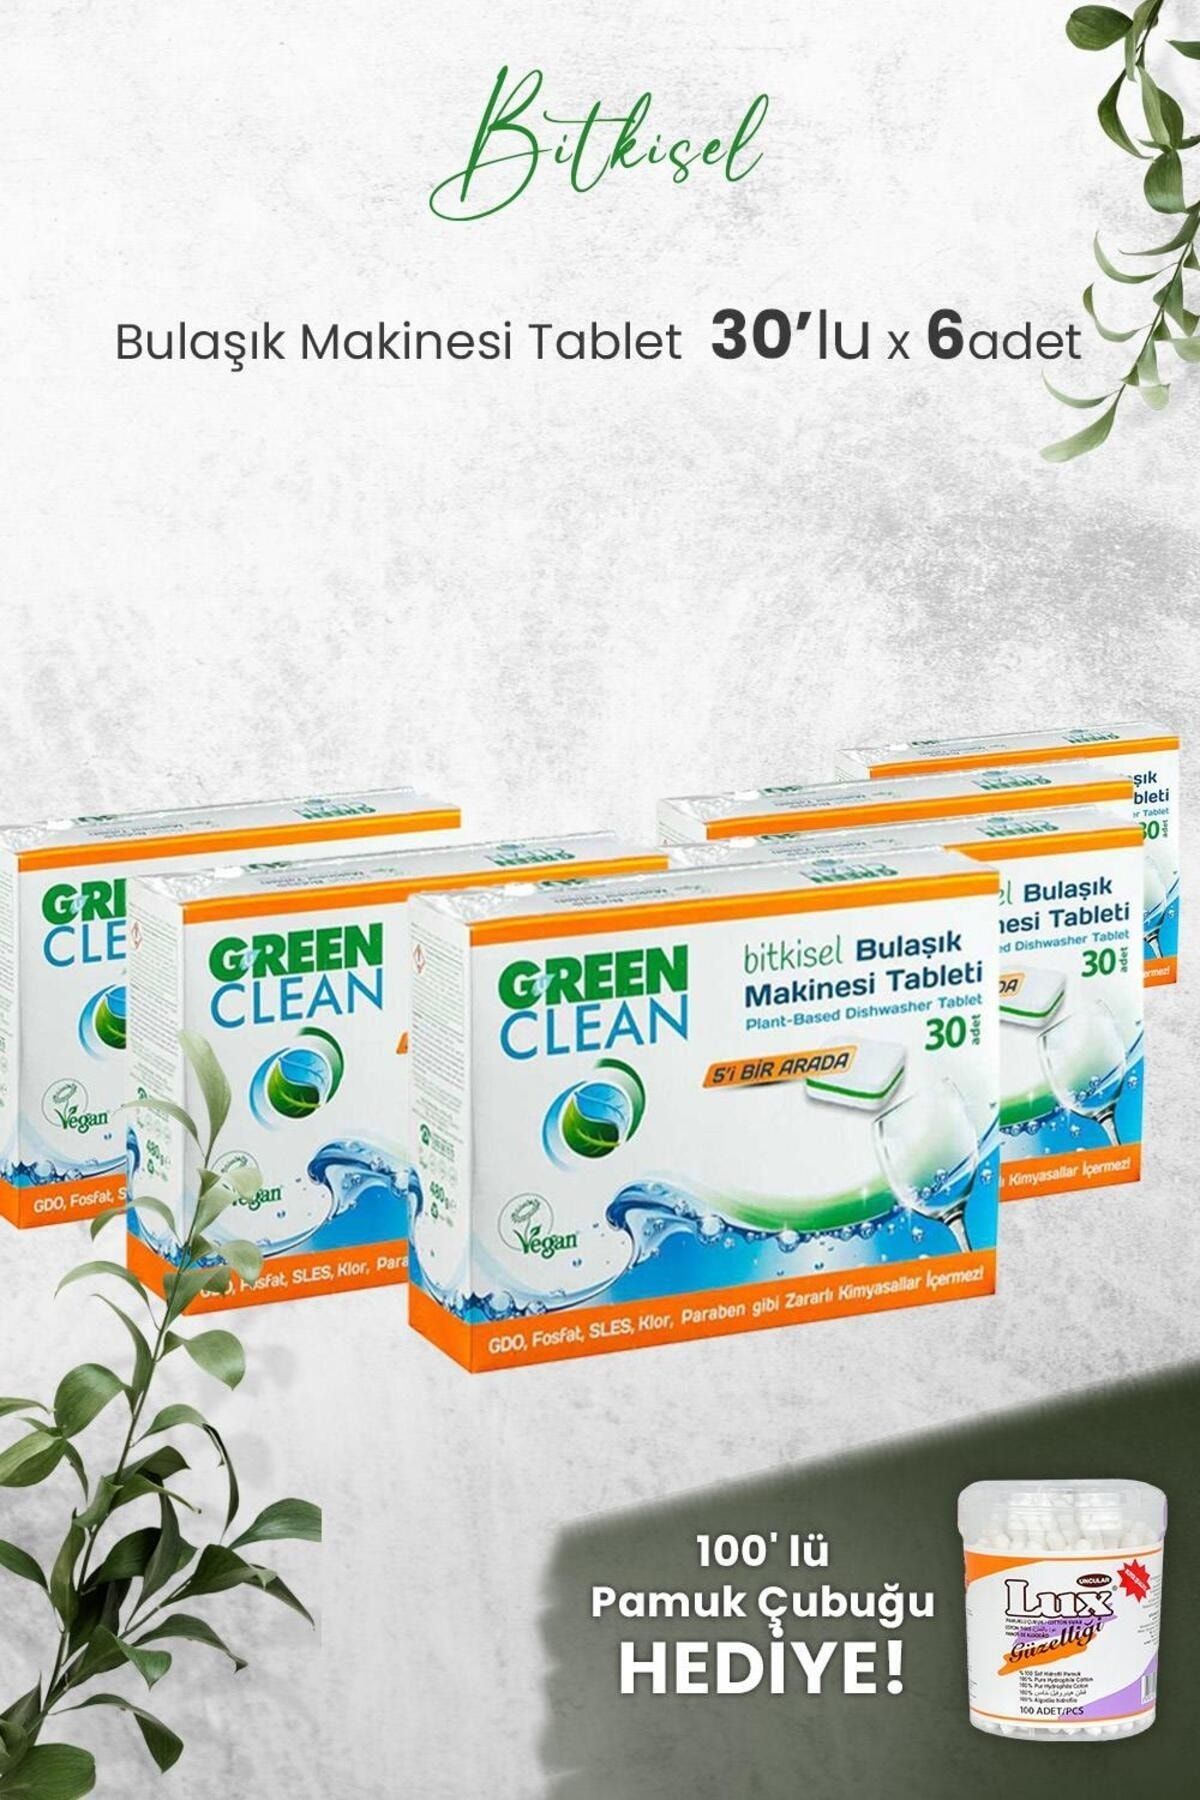 Green Clean U Green Clean Bulaşık Makinesi Tablet 30'lu x 6 Adet ve